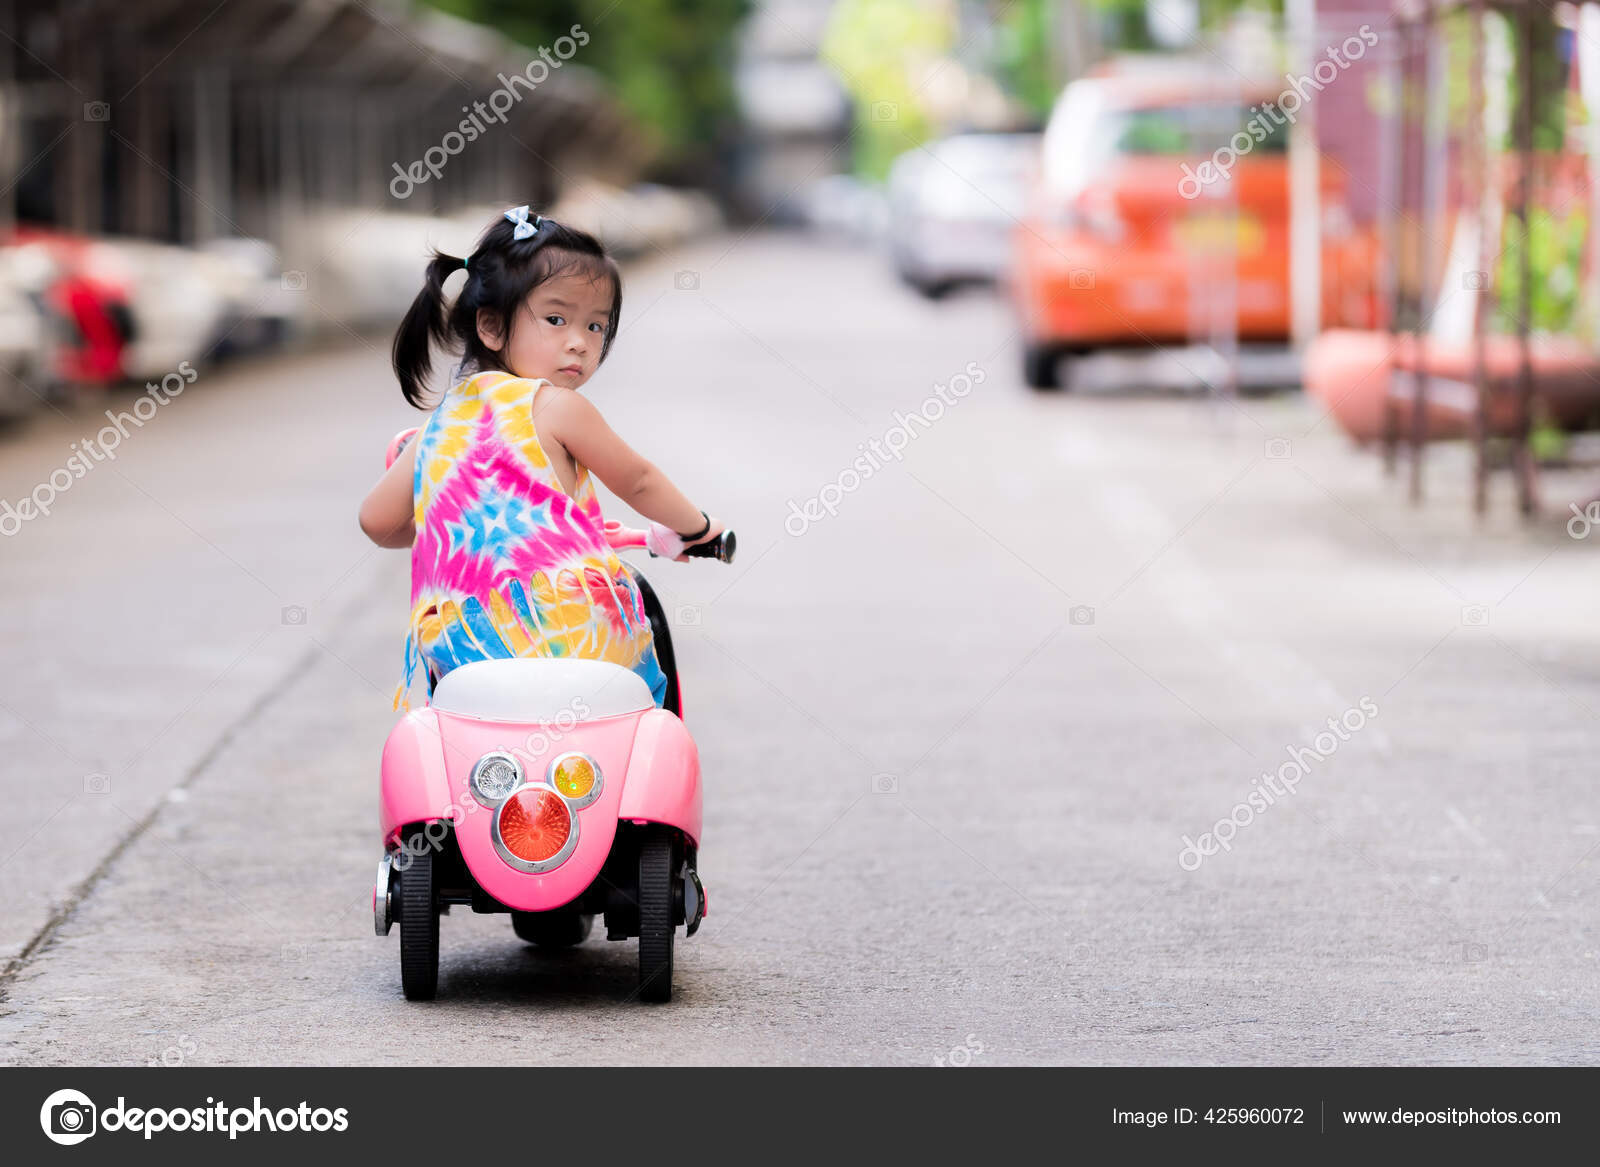 Moto Elétrica Toy Infantil Motocicleta Menino Menina Criança - Fazendo Seus  Filhos Felizes